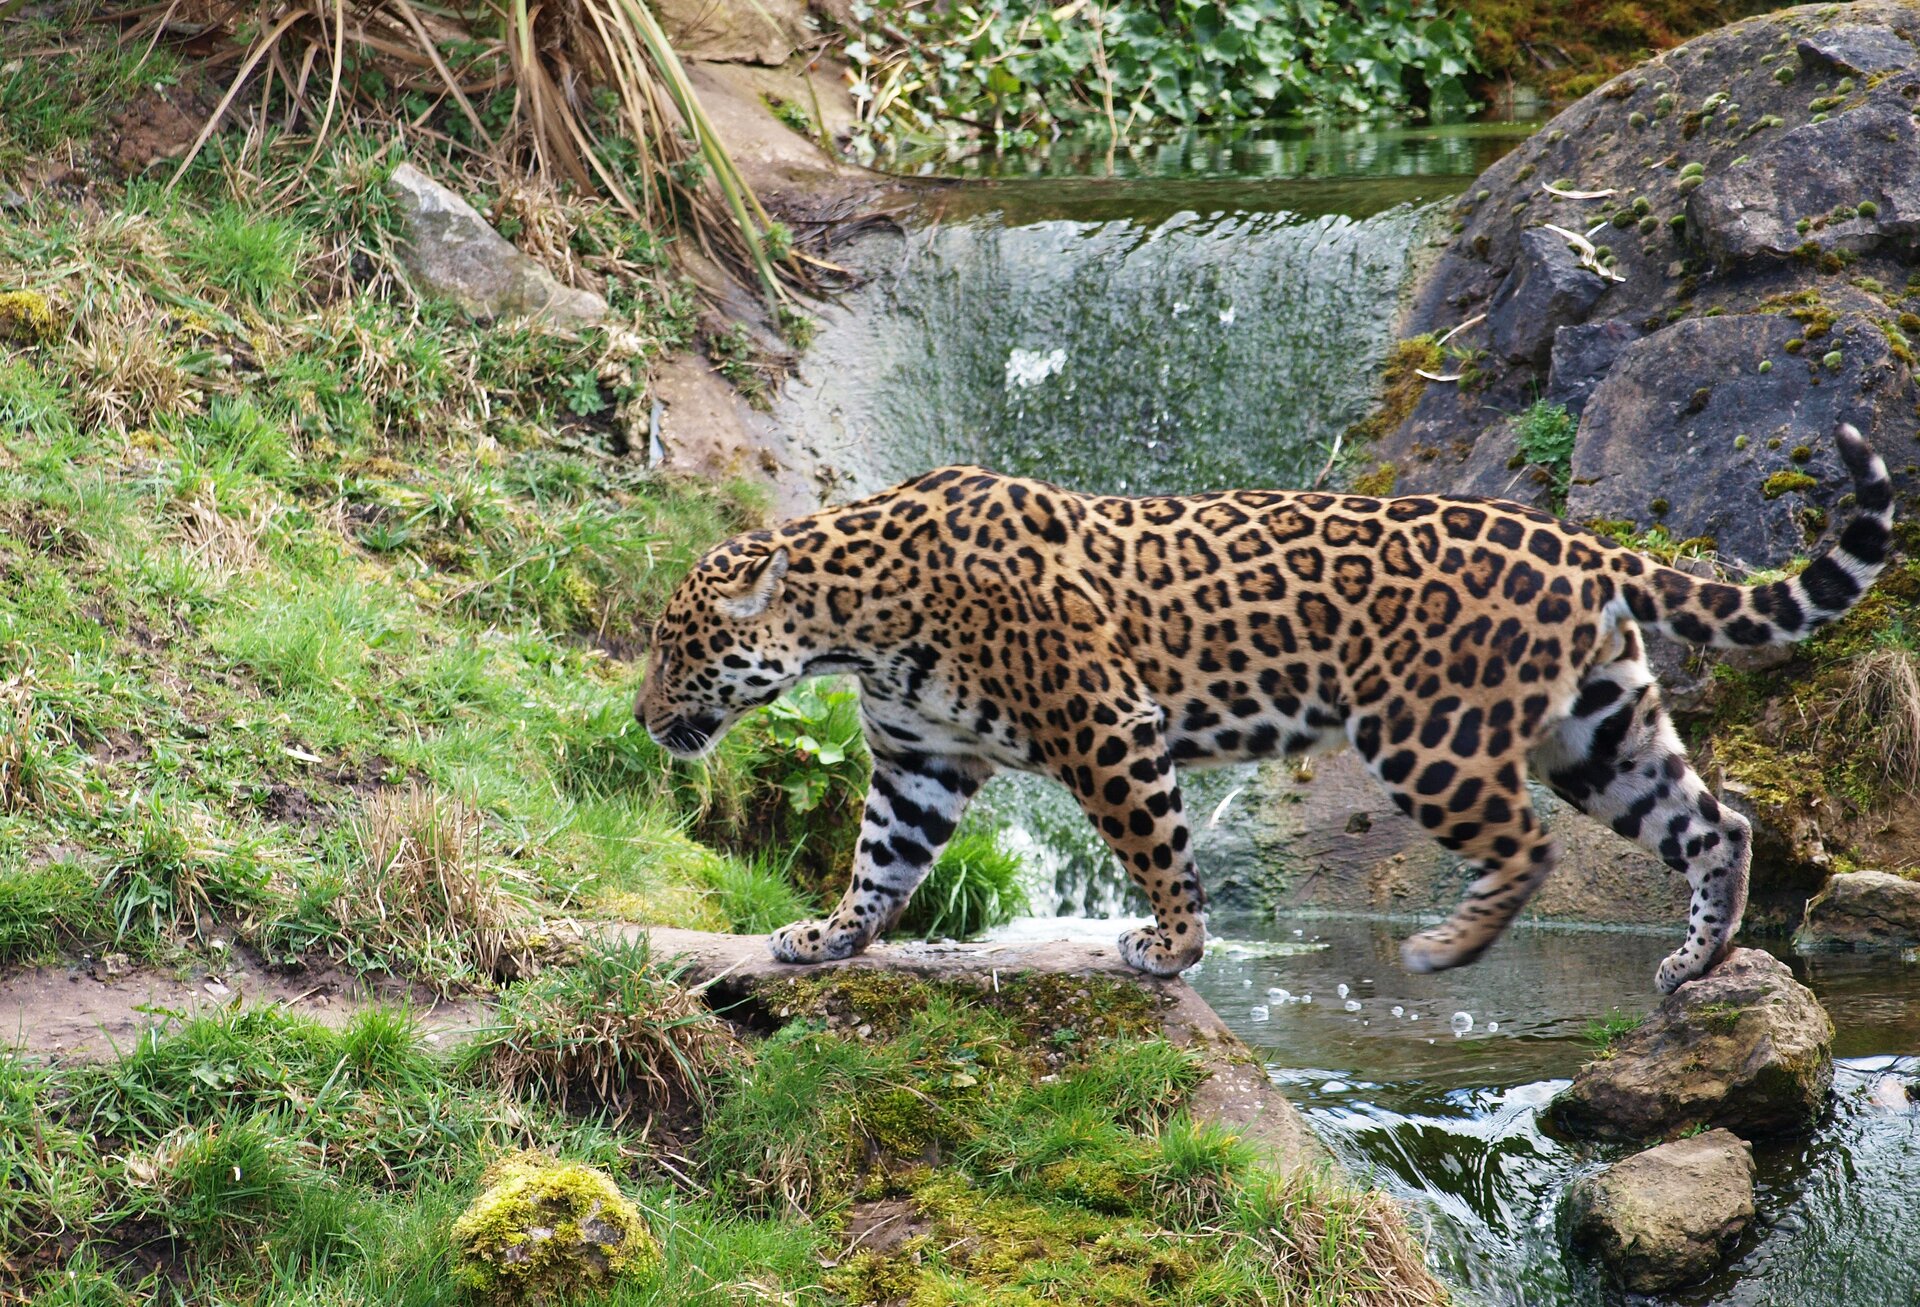 Fotografia przedstawia dużego, brązowego, cętkowanego jaguara, przechodzącego w lewo po kamieniach przez wartko płynący strumień. To jedyny amerykański przedstawiciel panter. Z prawej skały i woda, z lewej mchy i kępy traw. U góry korzenie roślin.